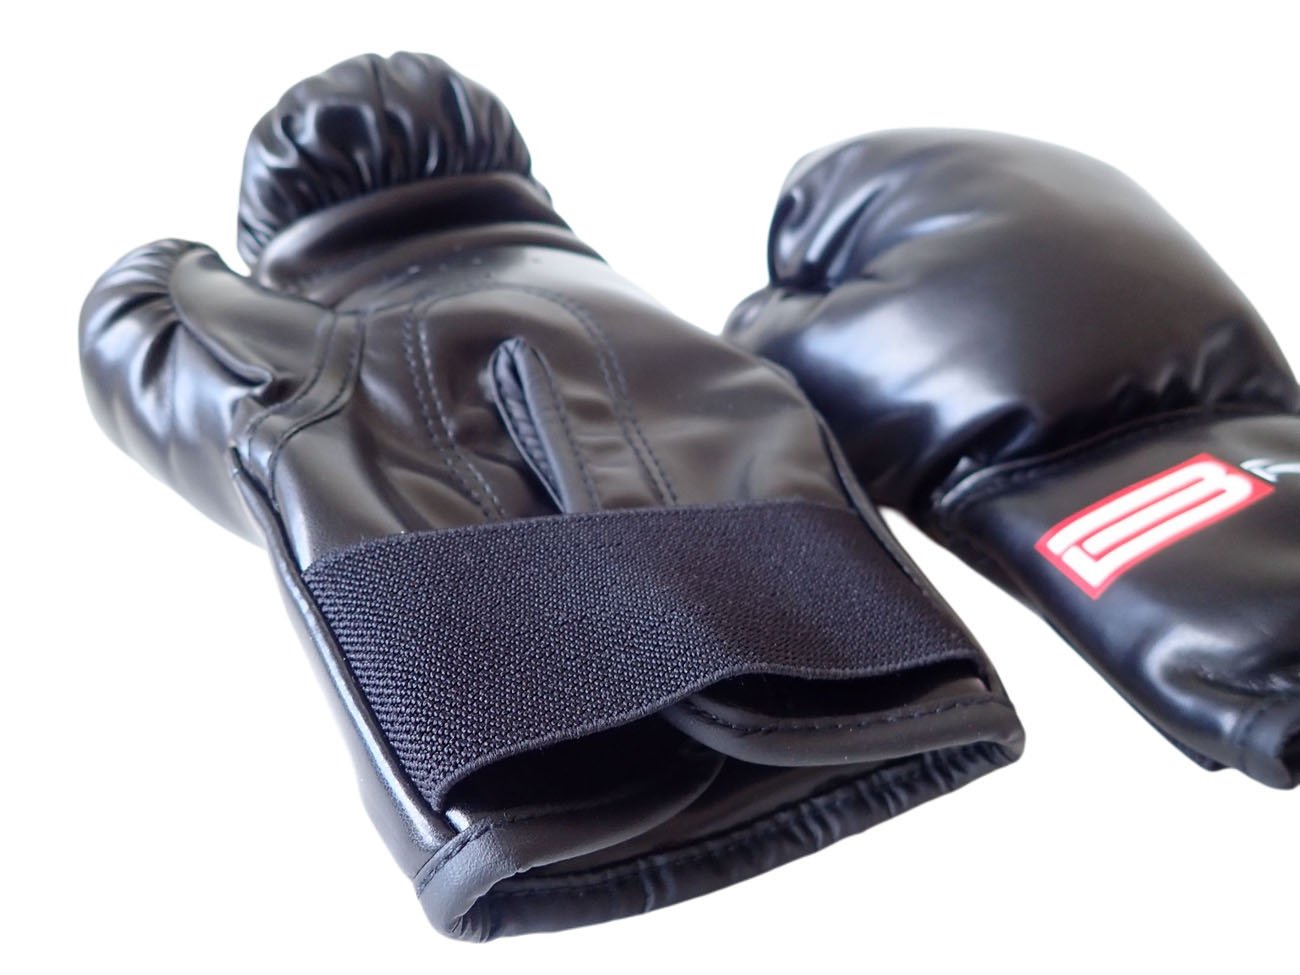 Boxerské rukavice PU kůže vel.L, 12 oz.